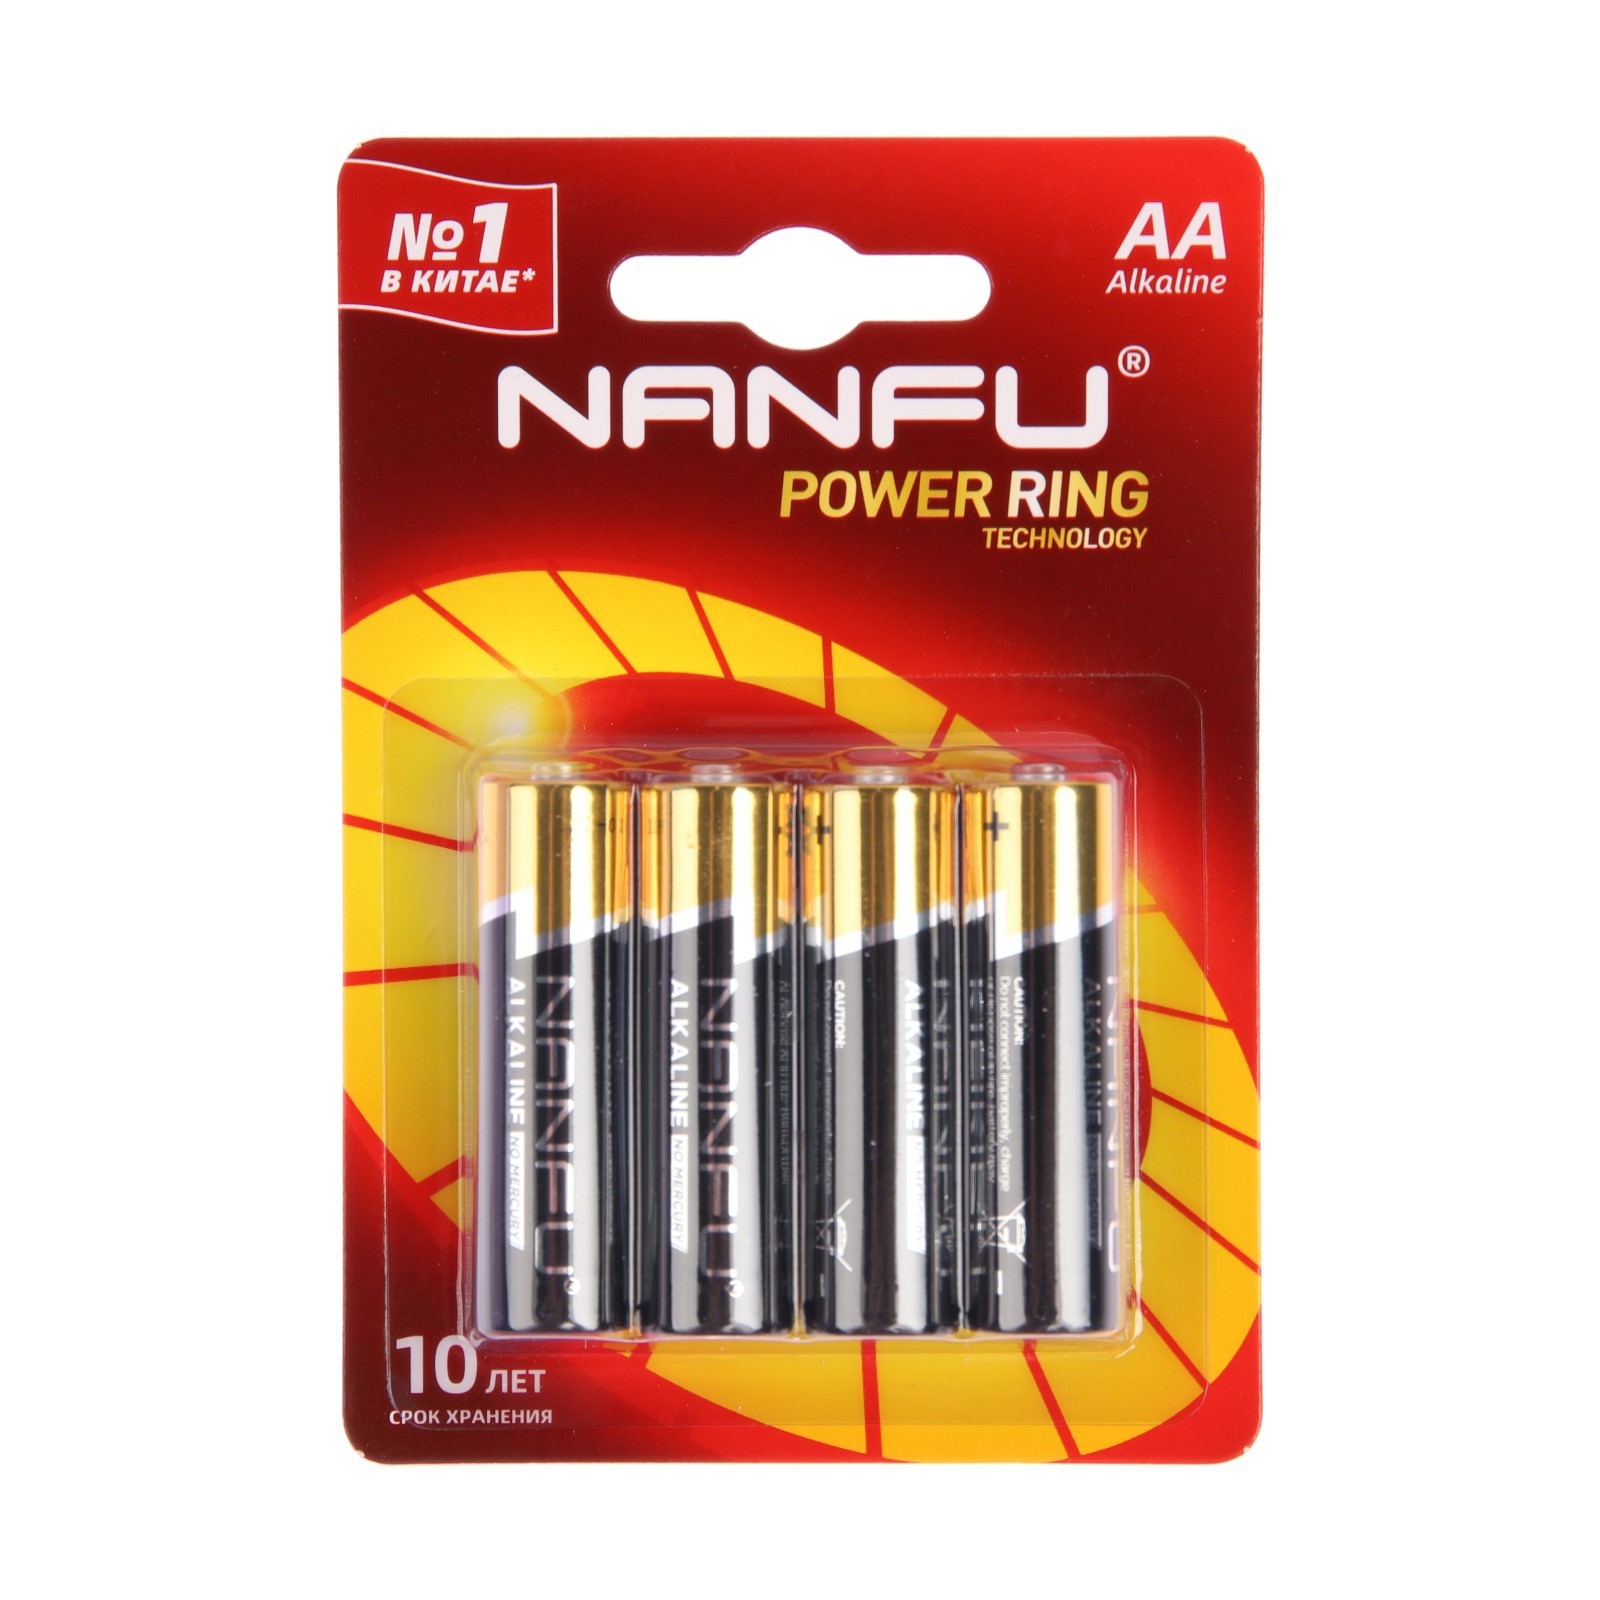 Батарейка алкалиновая Nanfu AA 9905028 алкалиновая LR6-4BL 1.5В блистер 4 шт. батарейка облик а23 lr23 alkaline алкалиновая 12 в блистер 5 шт